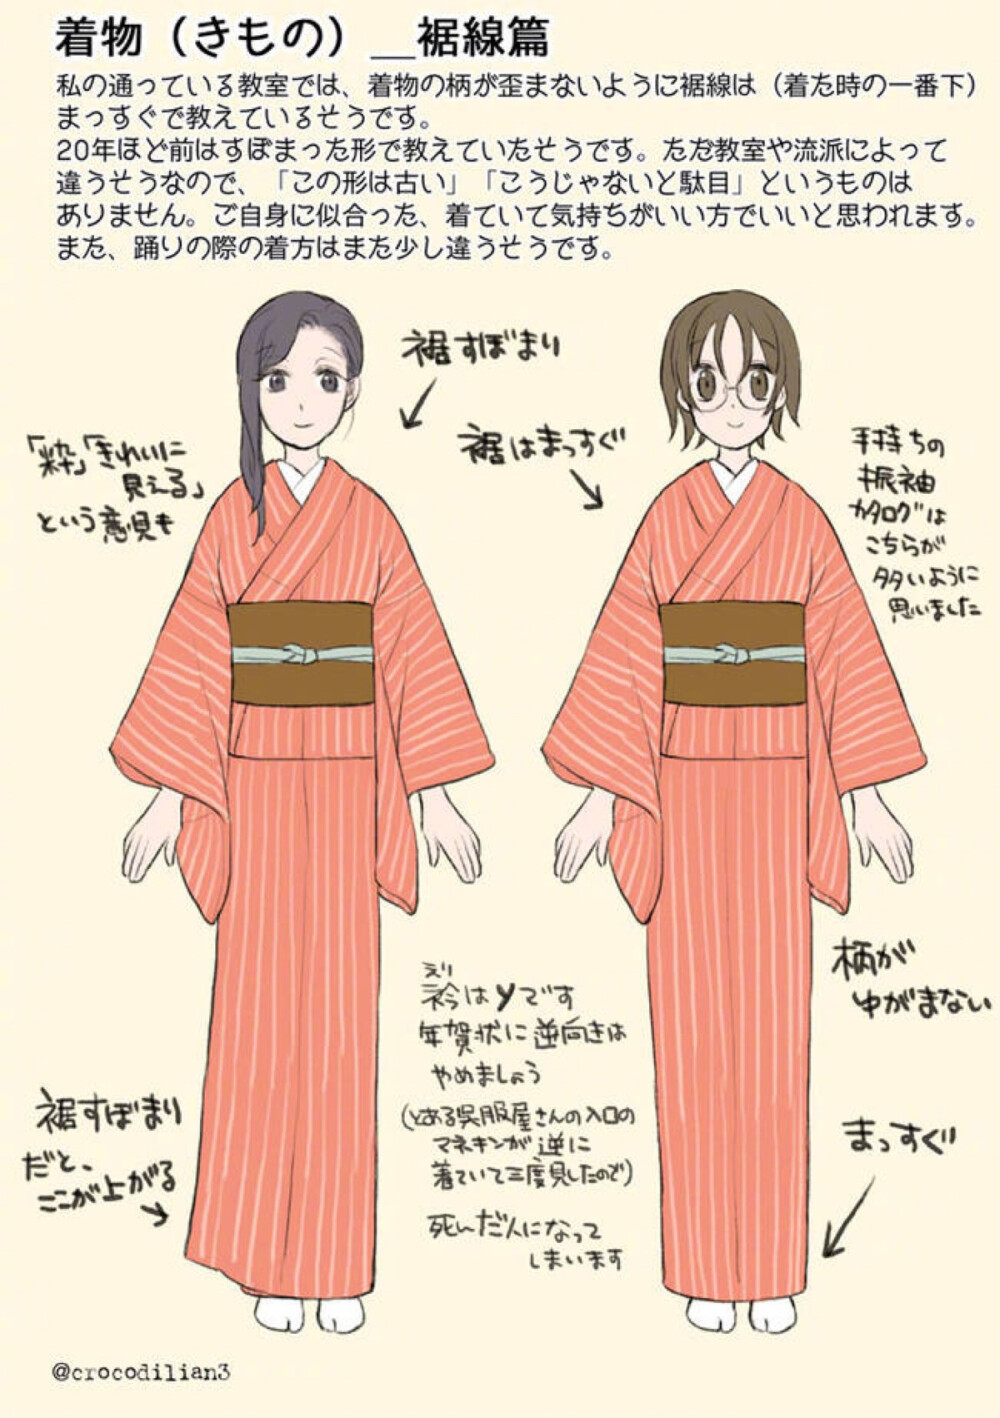 关于日本和服的种类整理素材绘画画画教程衣服